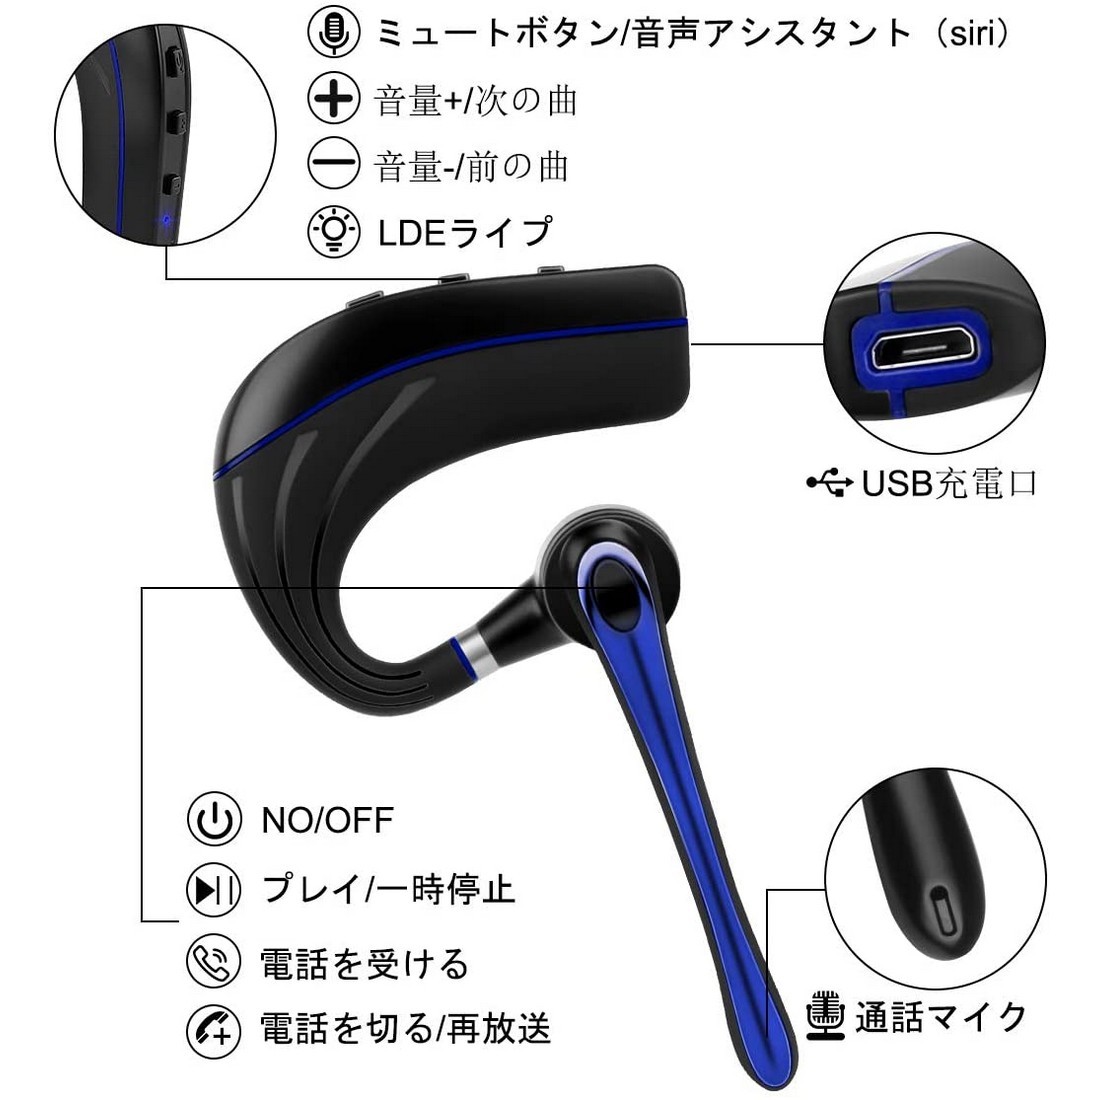 Bluetooth ヘッドセット5.0 ブルー 高音質片耳 内蔵マイク Bluetoothイヤホン ビジネス ハンズフリー 日本技適マーク取得 日本語取扱書_画像2